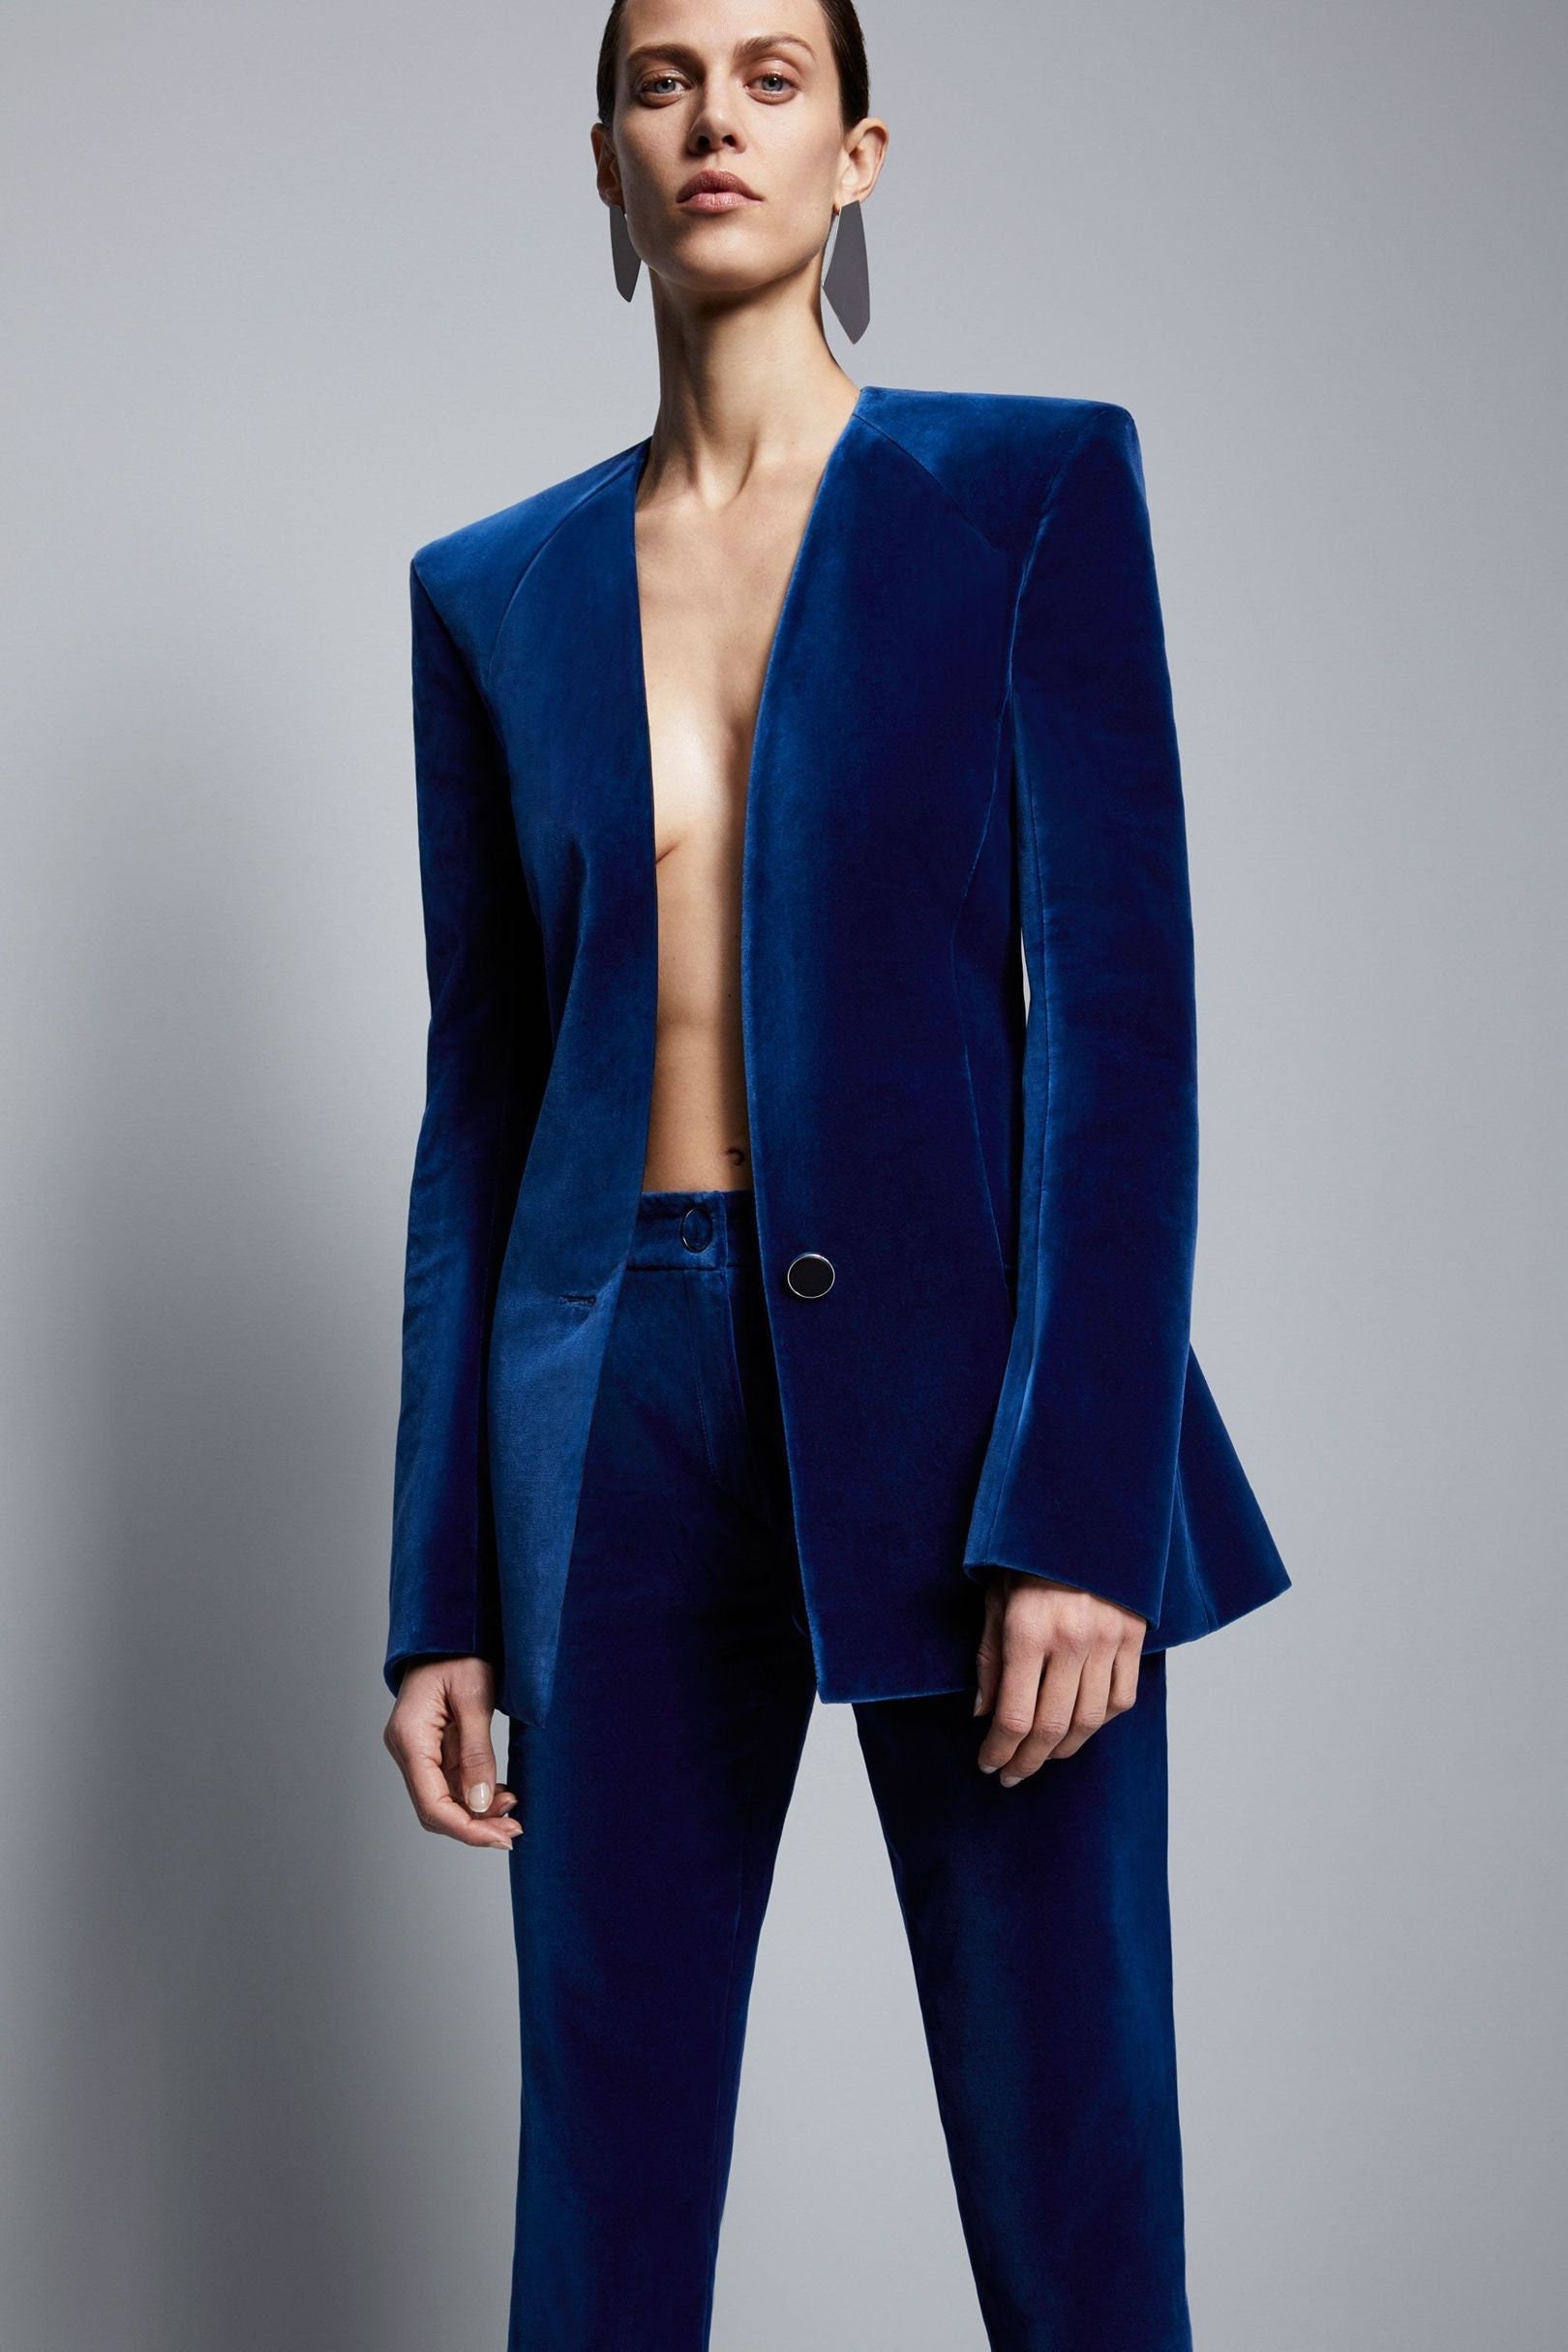 Blue Velvet Suit for Women/ GIRL Pant Suit/women's Tuxedo /women